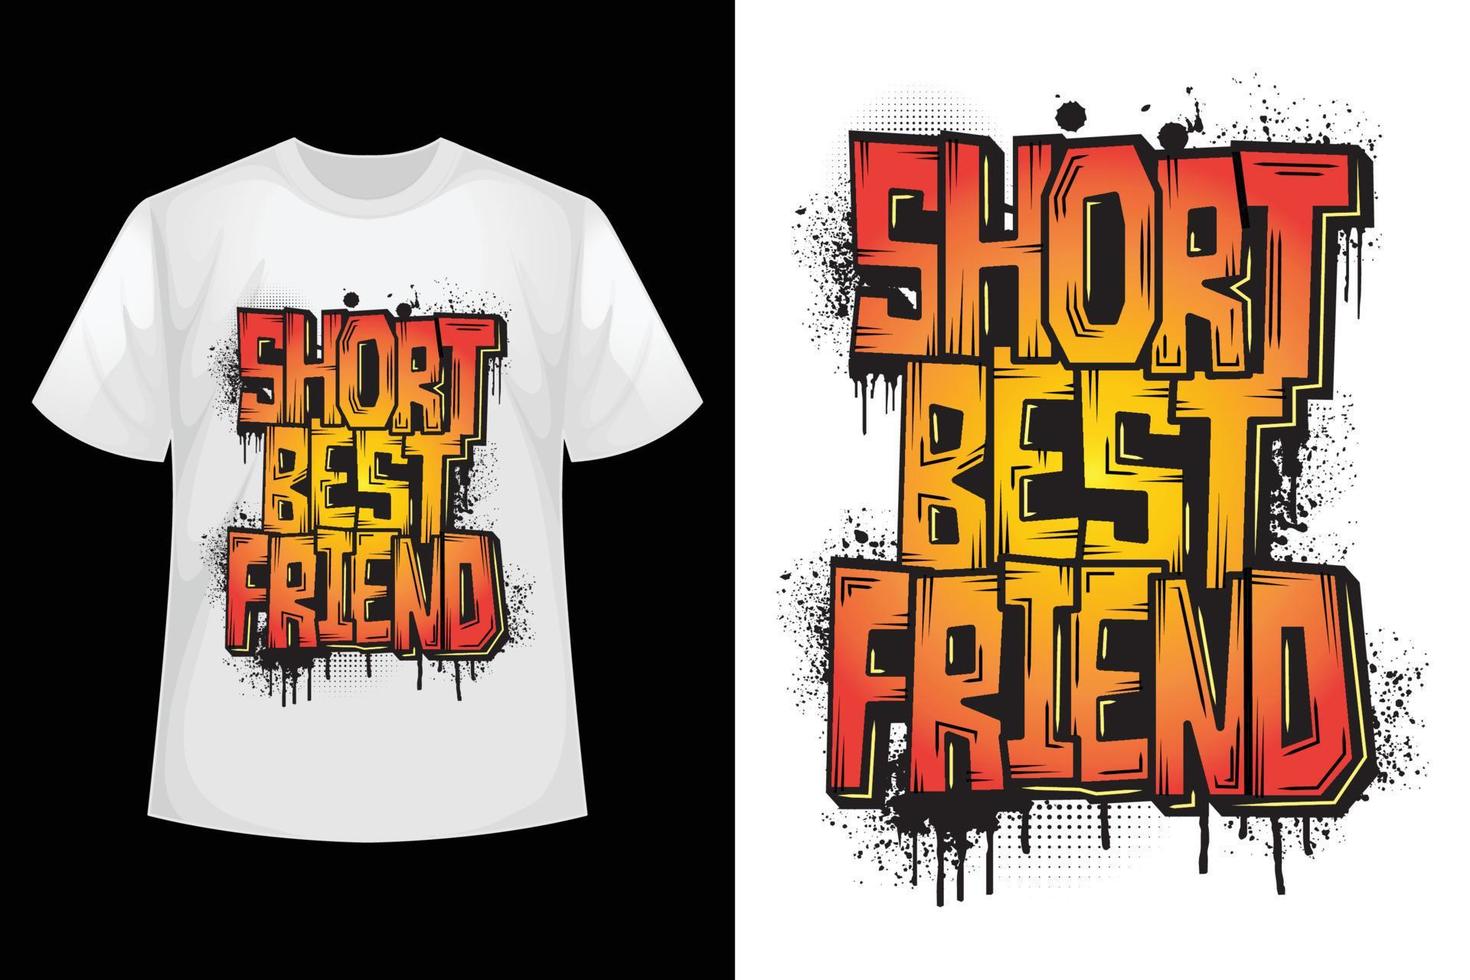 Short best friend - Friend t-shirt design template. vector